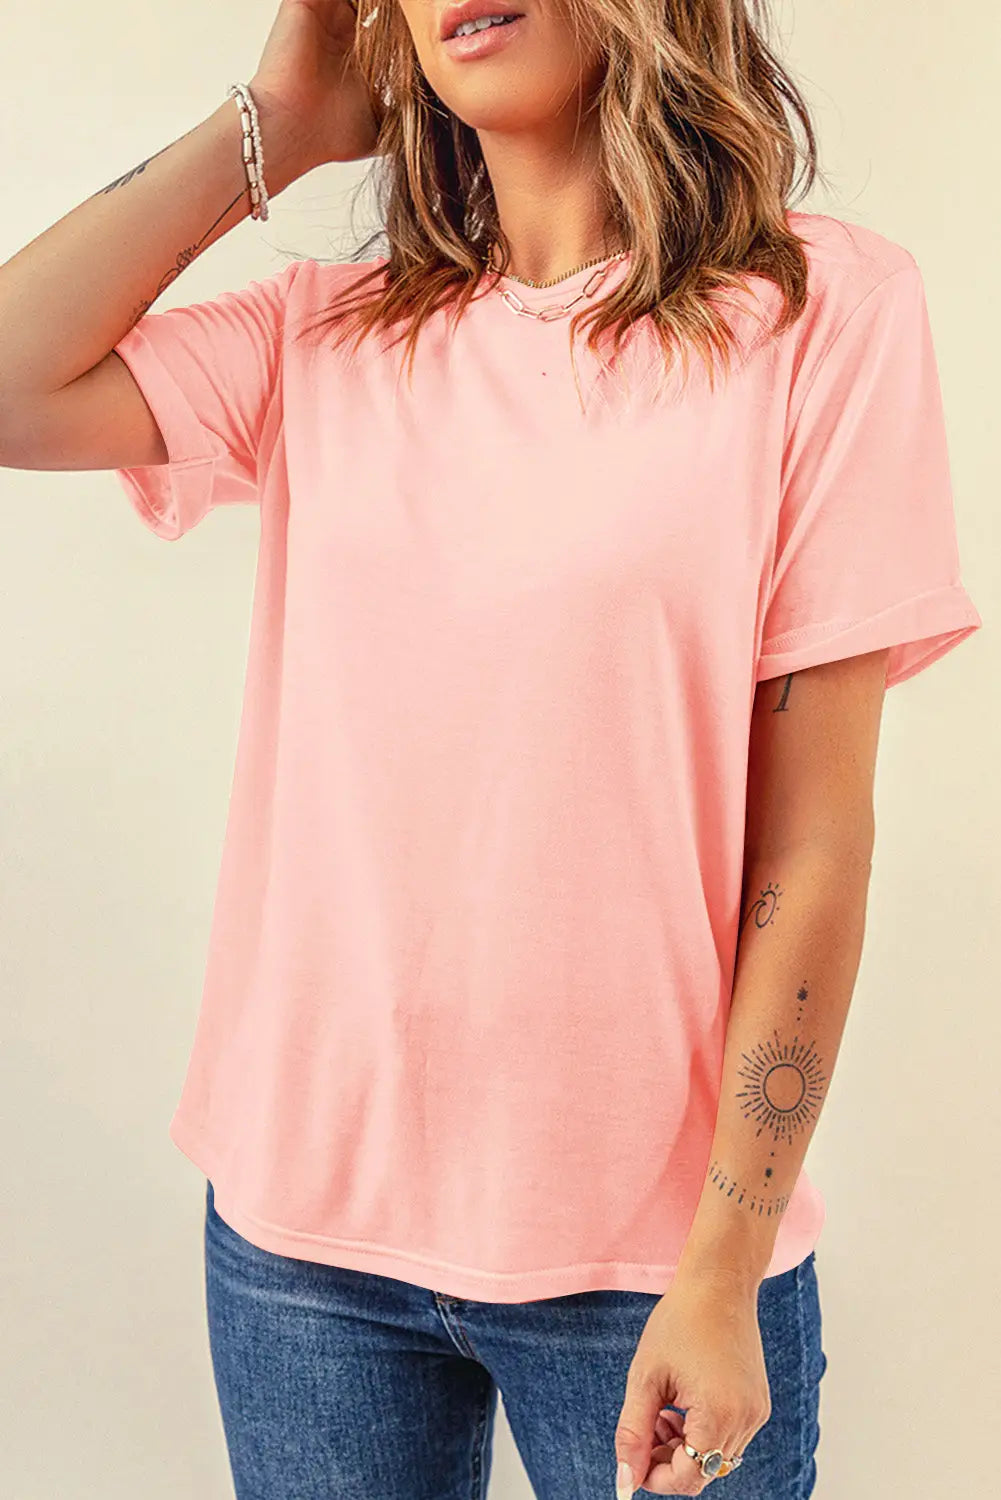 Khaki casual plain crew neck tee - pink / s / 62% polyester + 32% cotton + 6% elastane - t-shirts